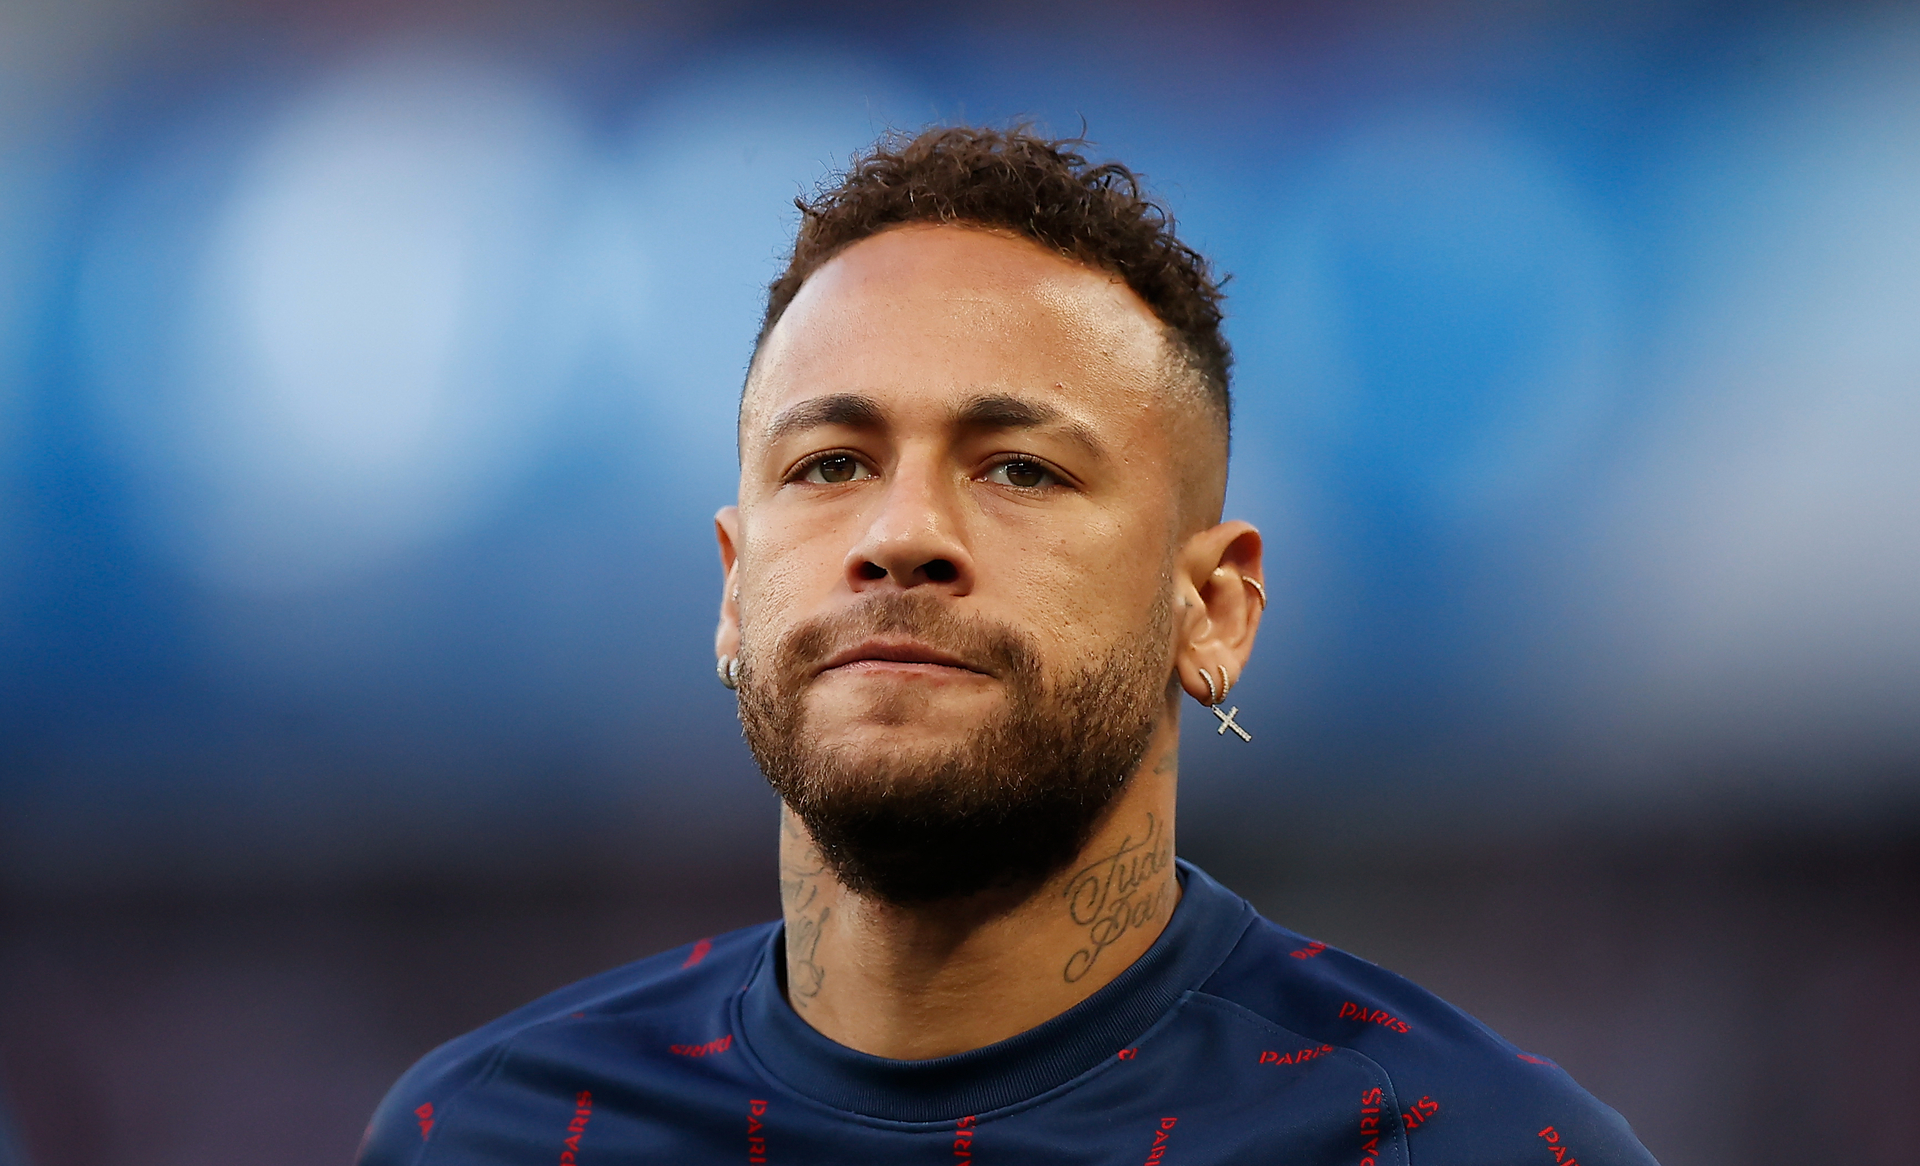 Manchester City rechazó un trueque por Neymar propuesto por el PSG, según Le Parisien